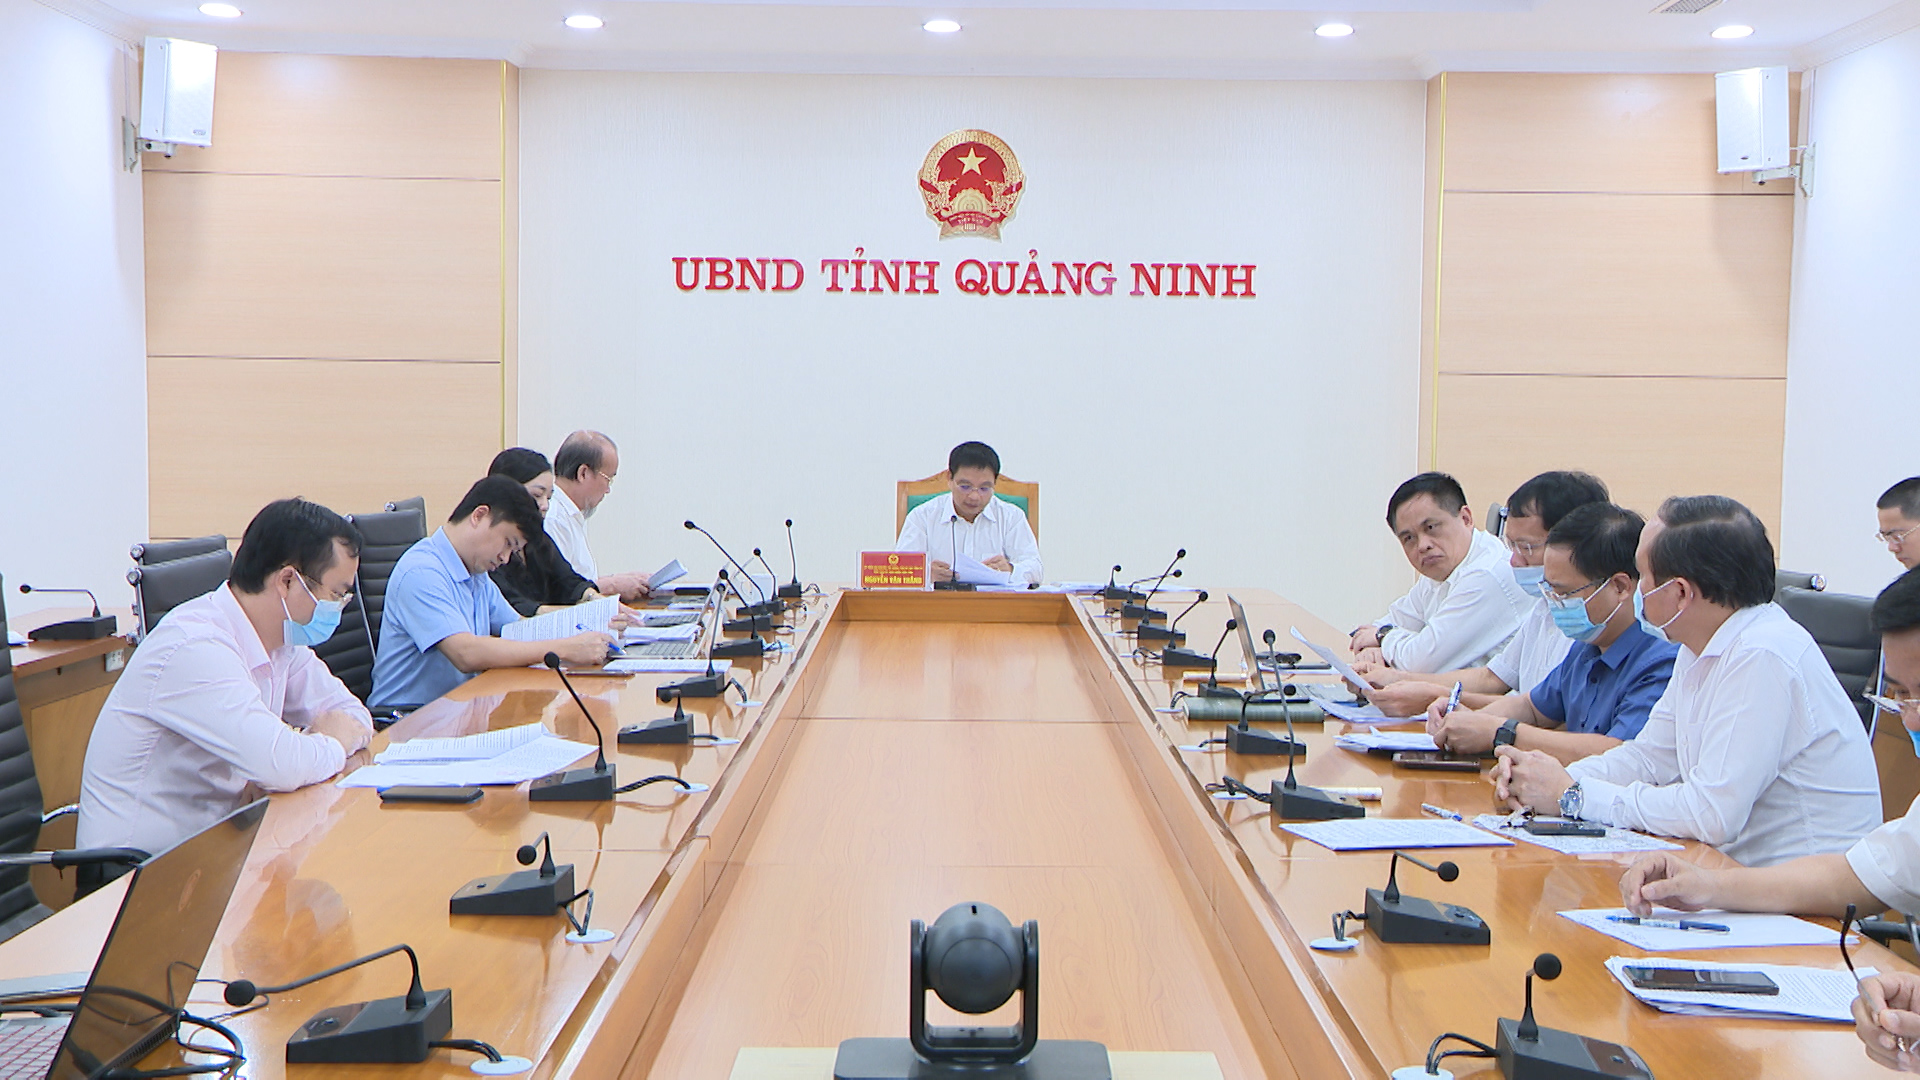 Đồng chí Nguyễn Văn Thắng, Chủ tịch UBND tỉnh chỉ đạo cuộc họp.